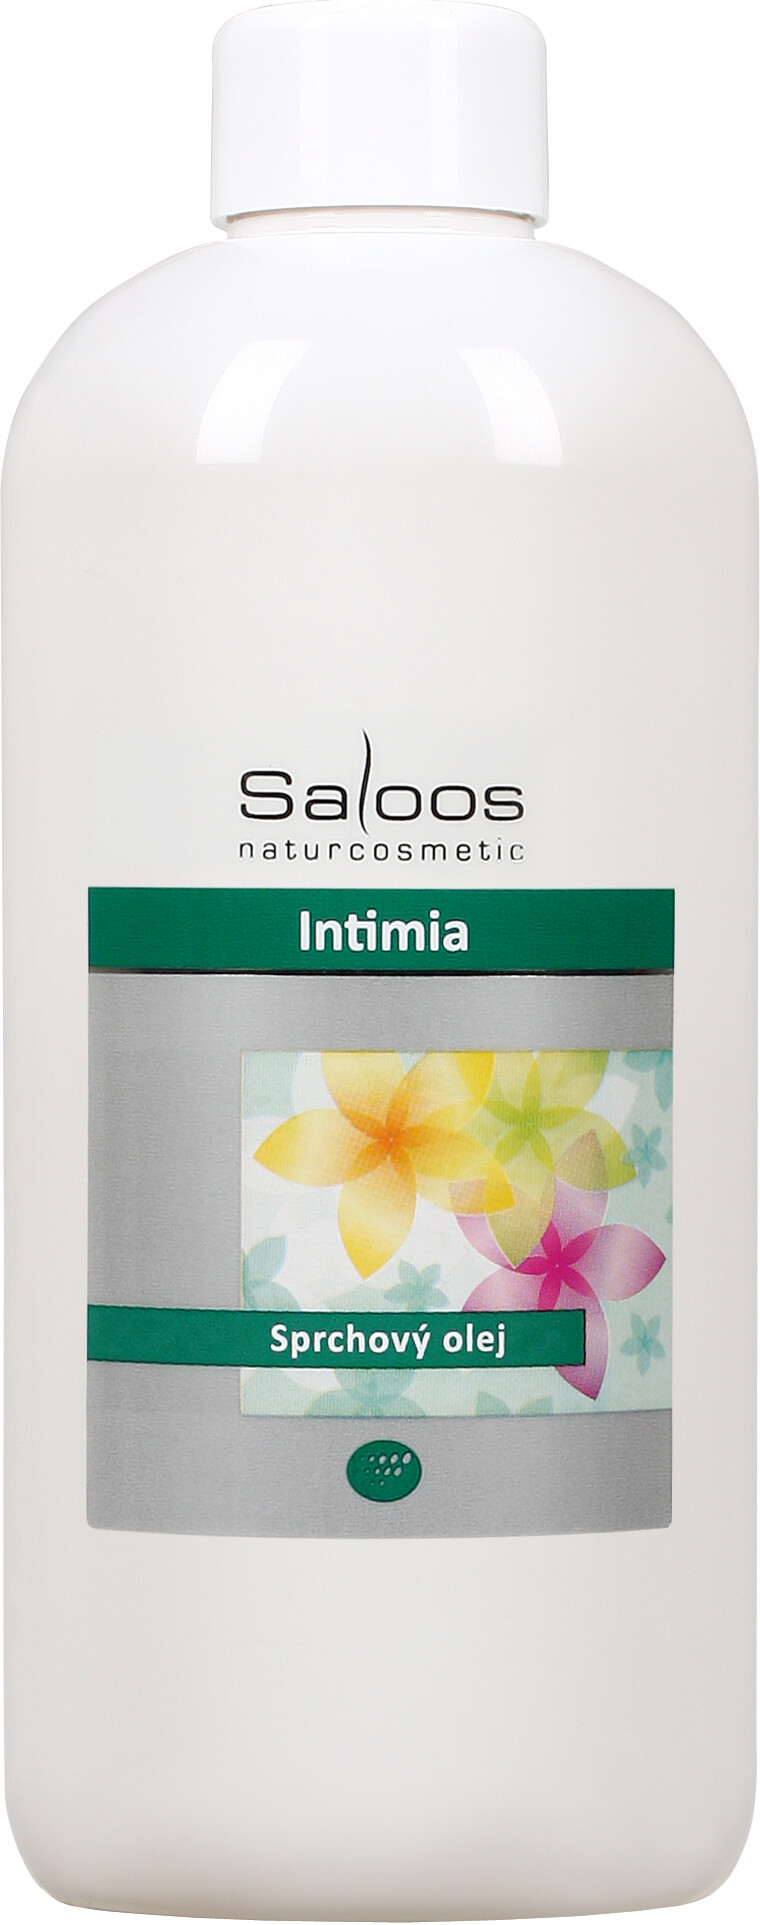 Zobrazit detail výrobku Saloos Sprchový olej - Intimia 250 ml + 2 měsíce na vrácení zboží